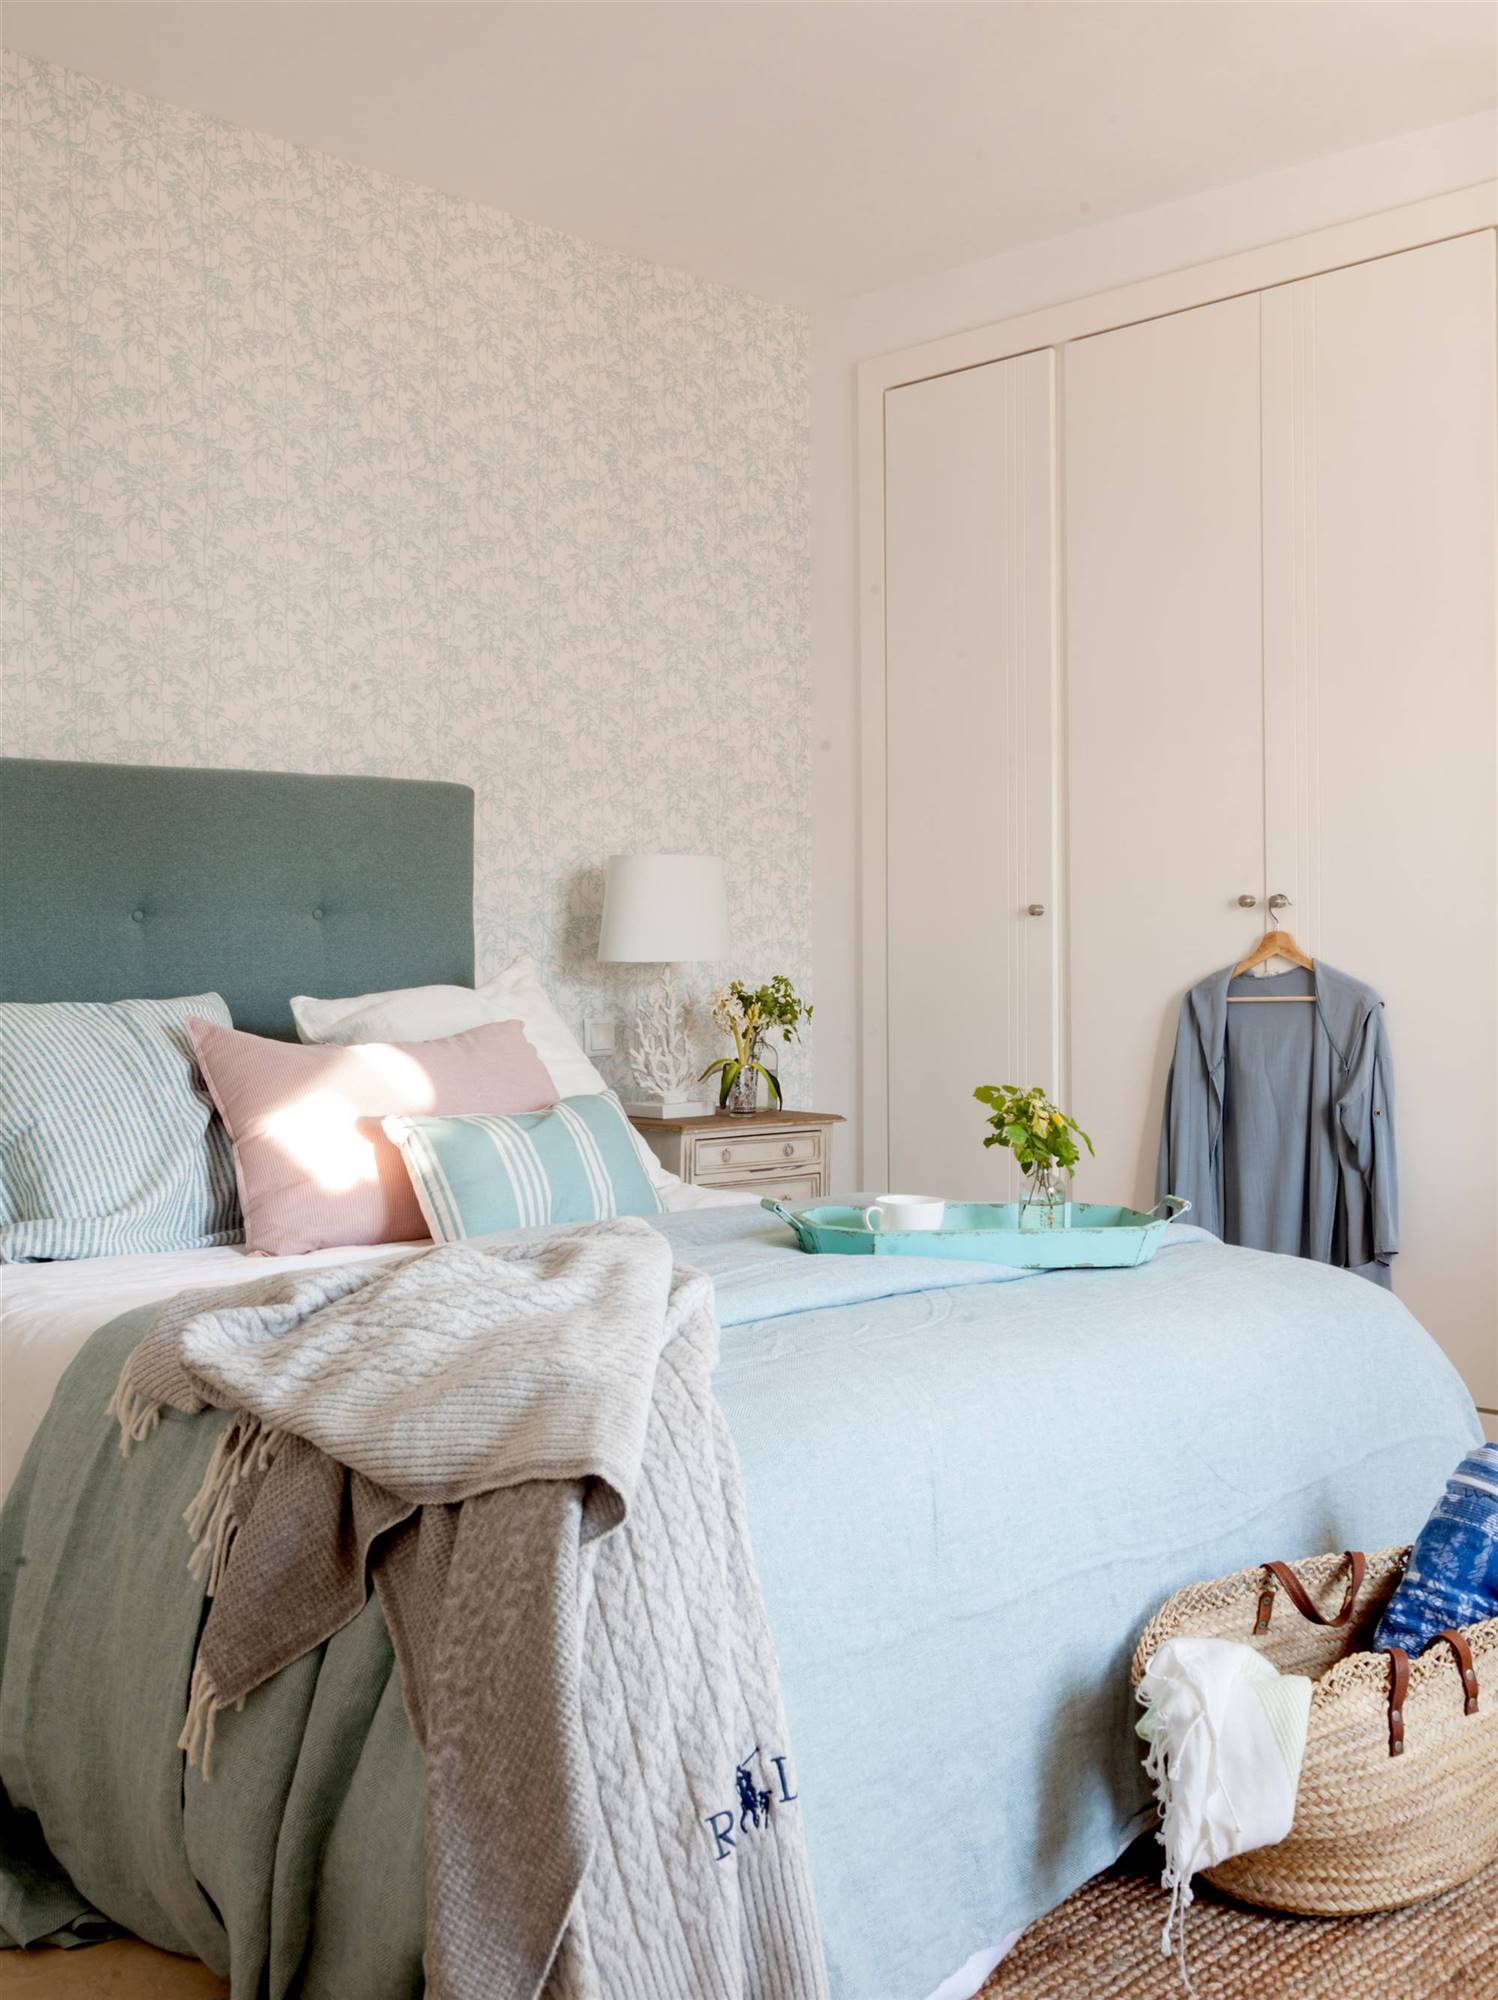 Dormitorio con papel pintado en la pared del cabecero y armario empotrado. 